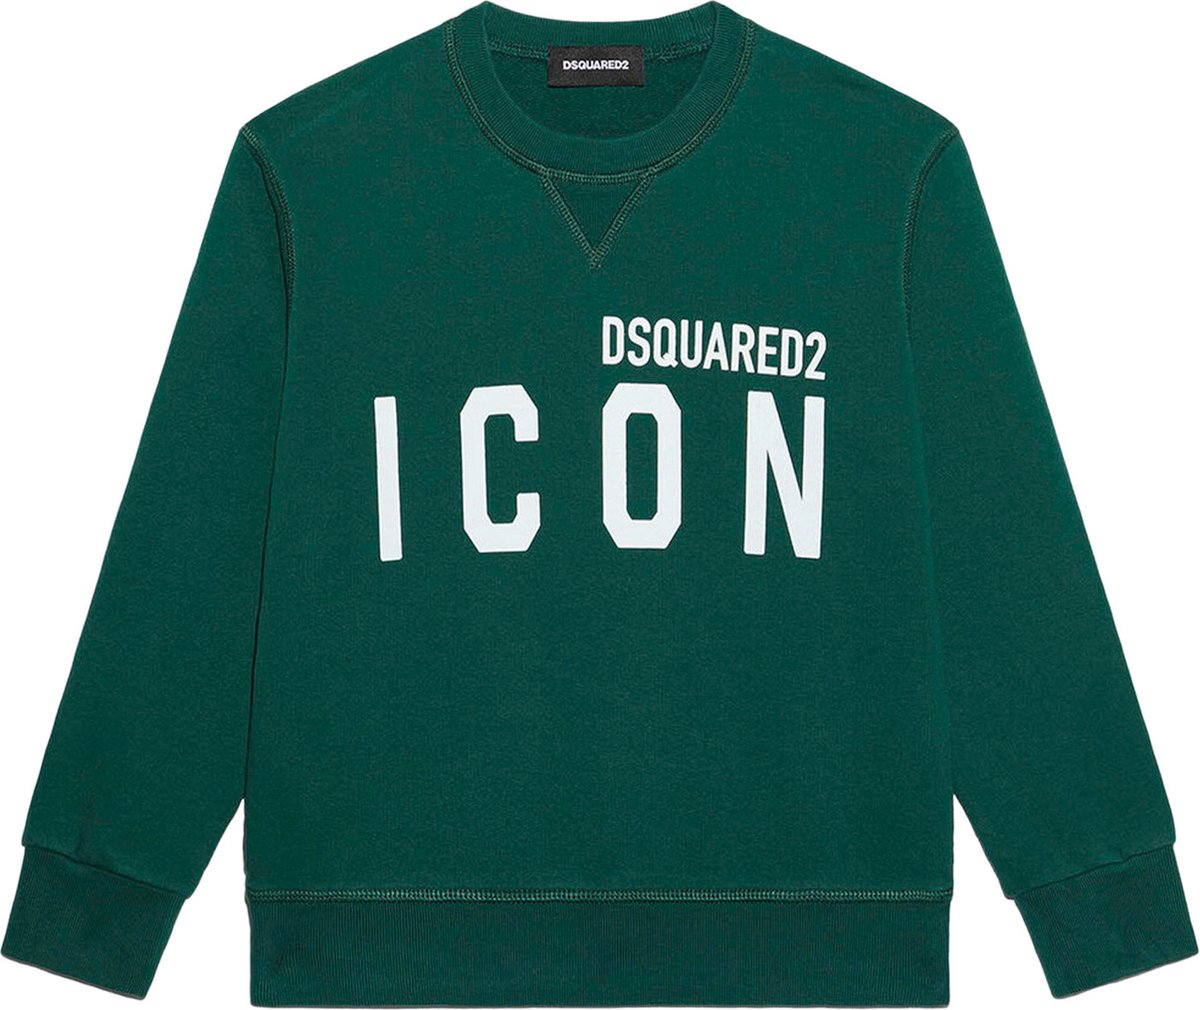 Dsquared2 Jongens Icon Sweater Groen maat 164